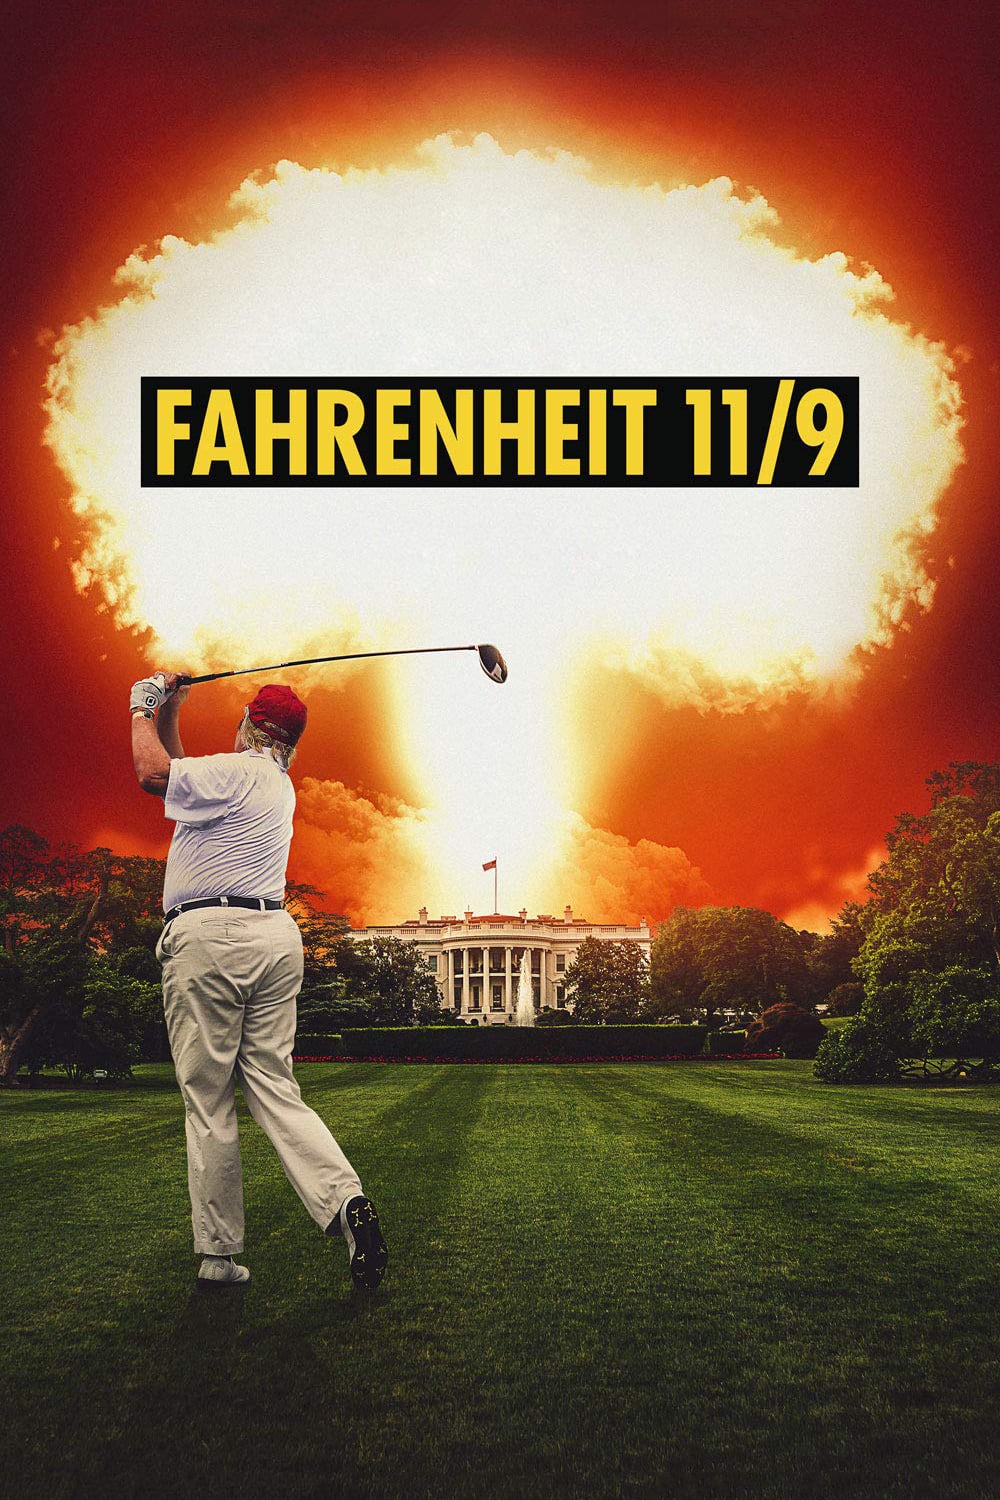 مستند فارنهایت 11/9 (2018) - Fahrenheit 11/9 با زیرنویس فارسی